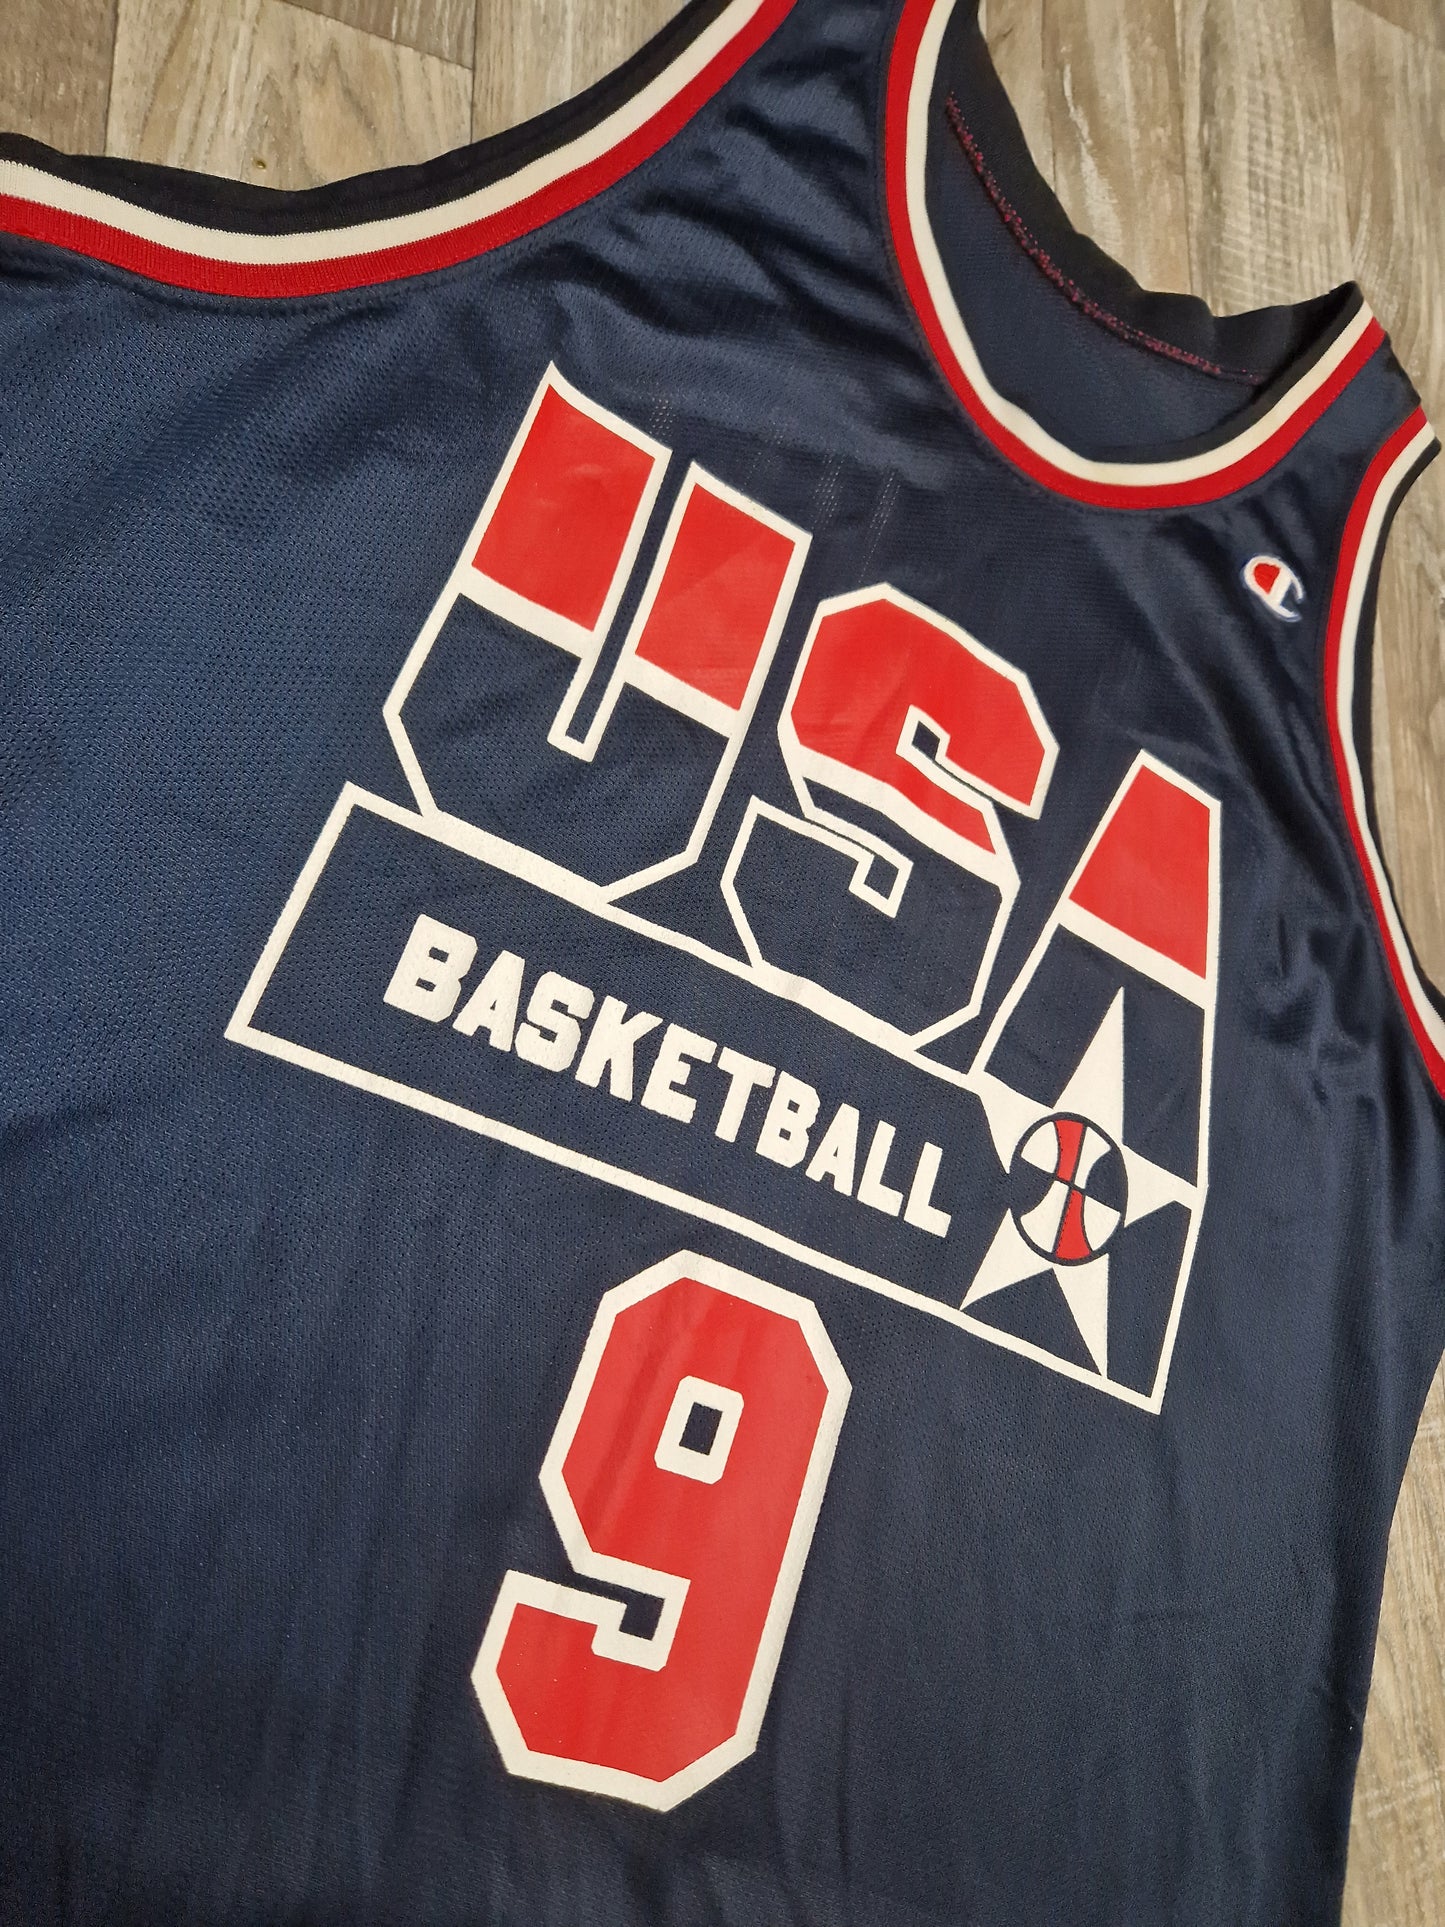 Dan Majerle Team USA Jersey Size XL